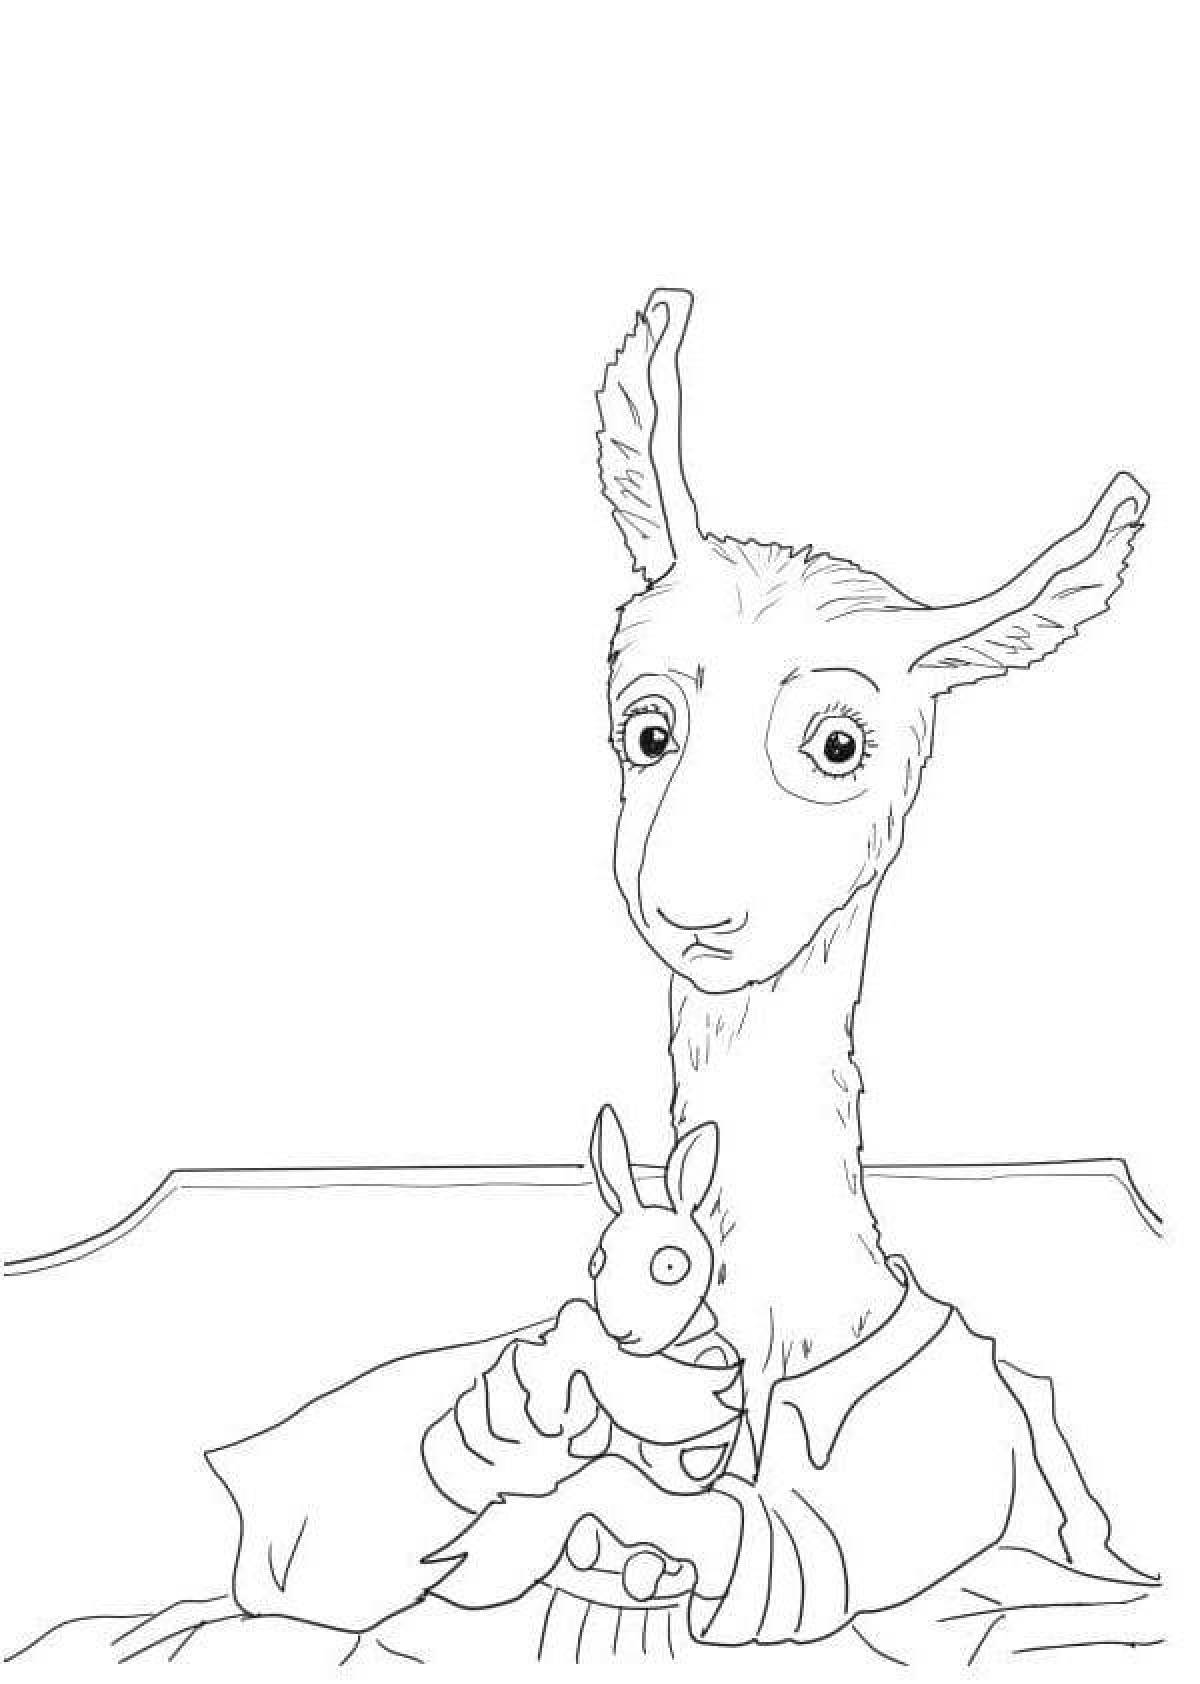 Funny cute llama coloring book